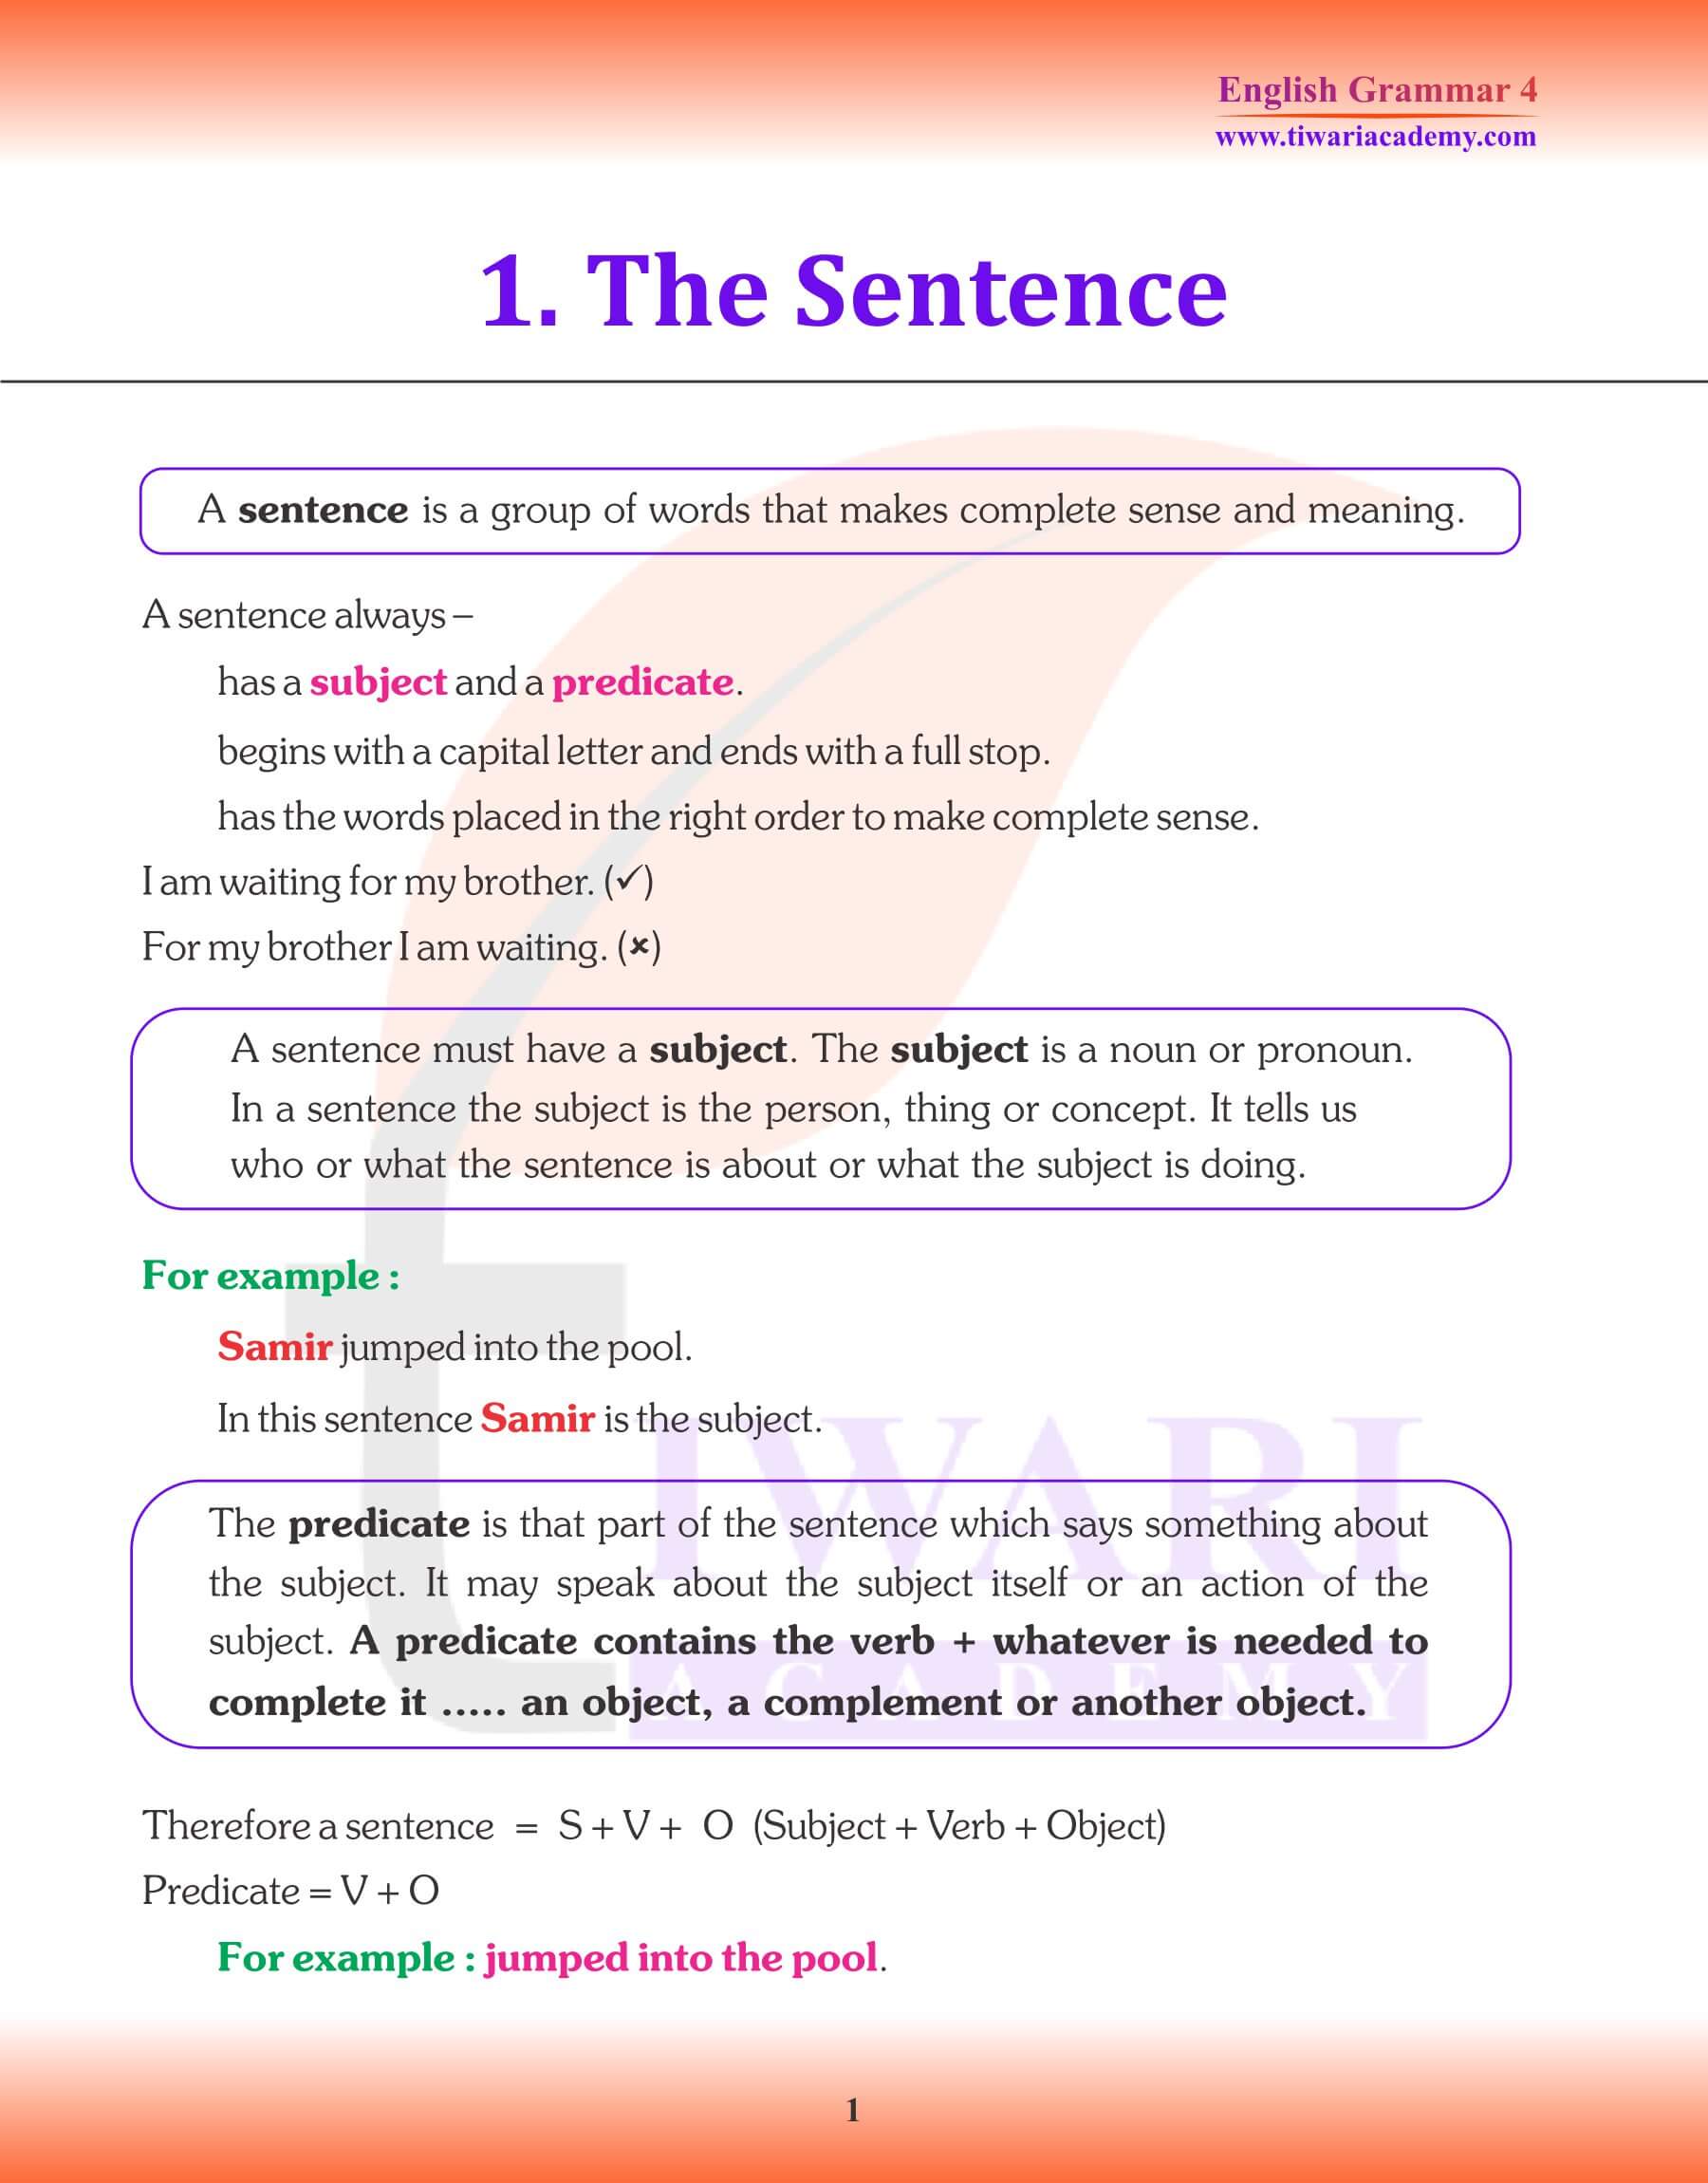 NCERT Class 4 English Grammar Chapter 1 The Sentence